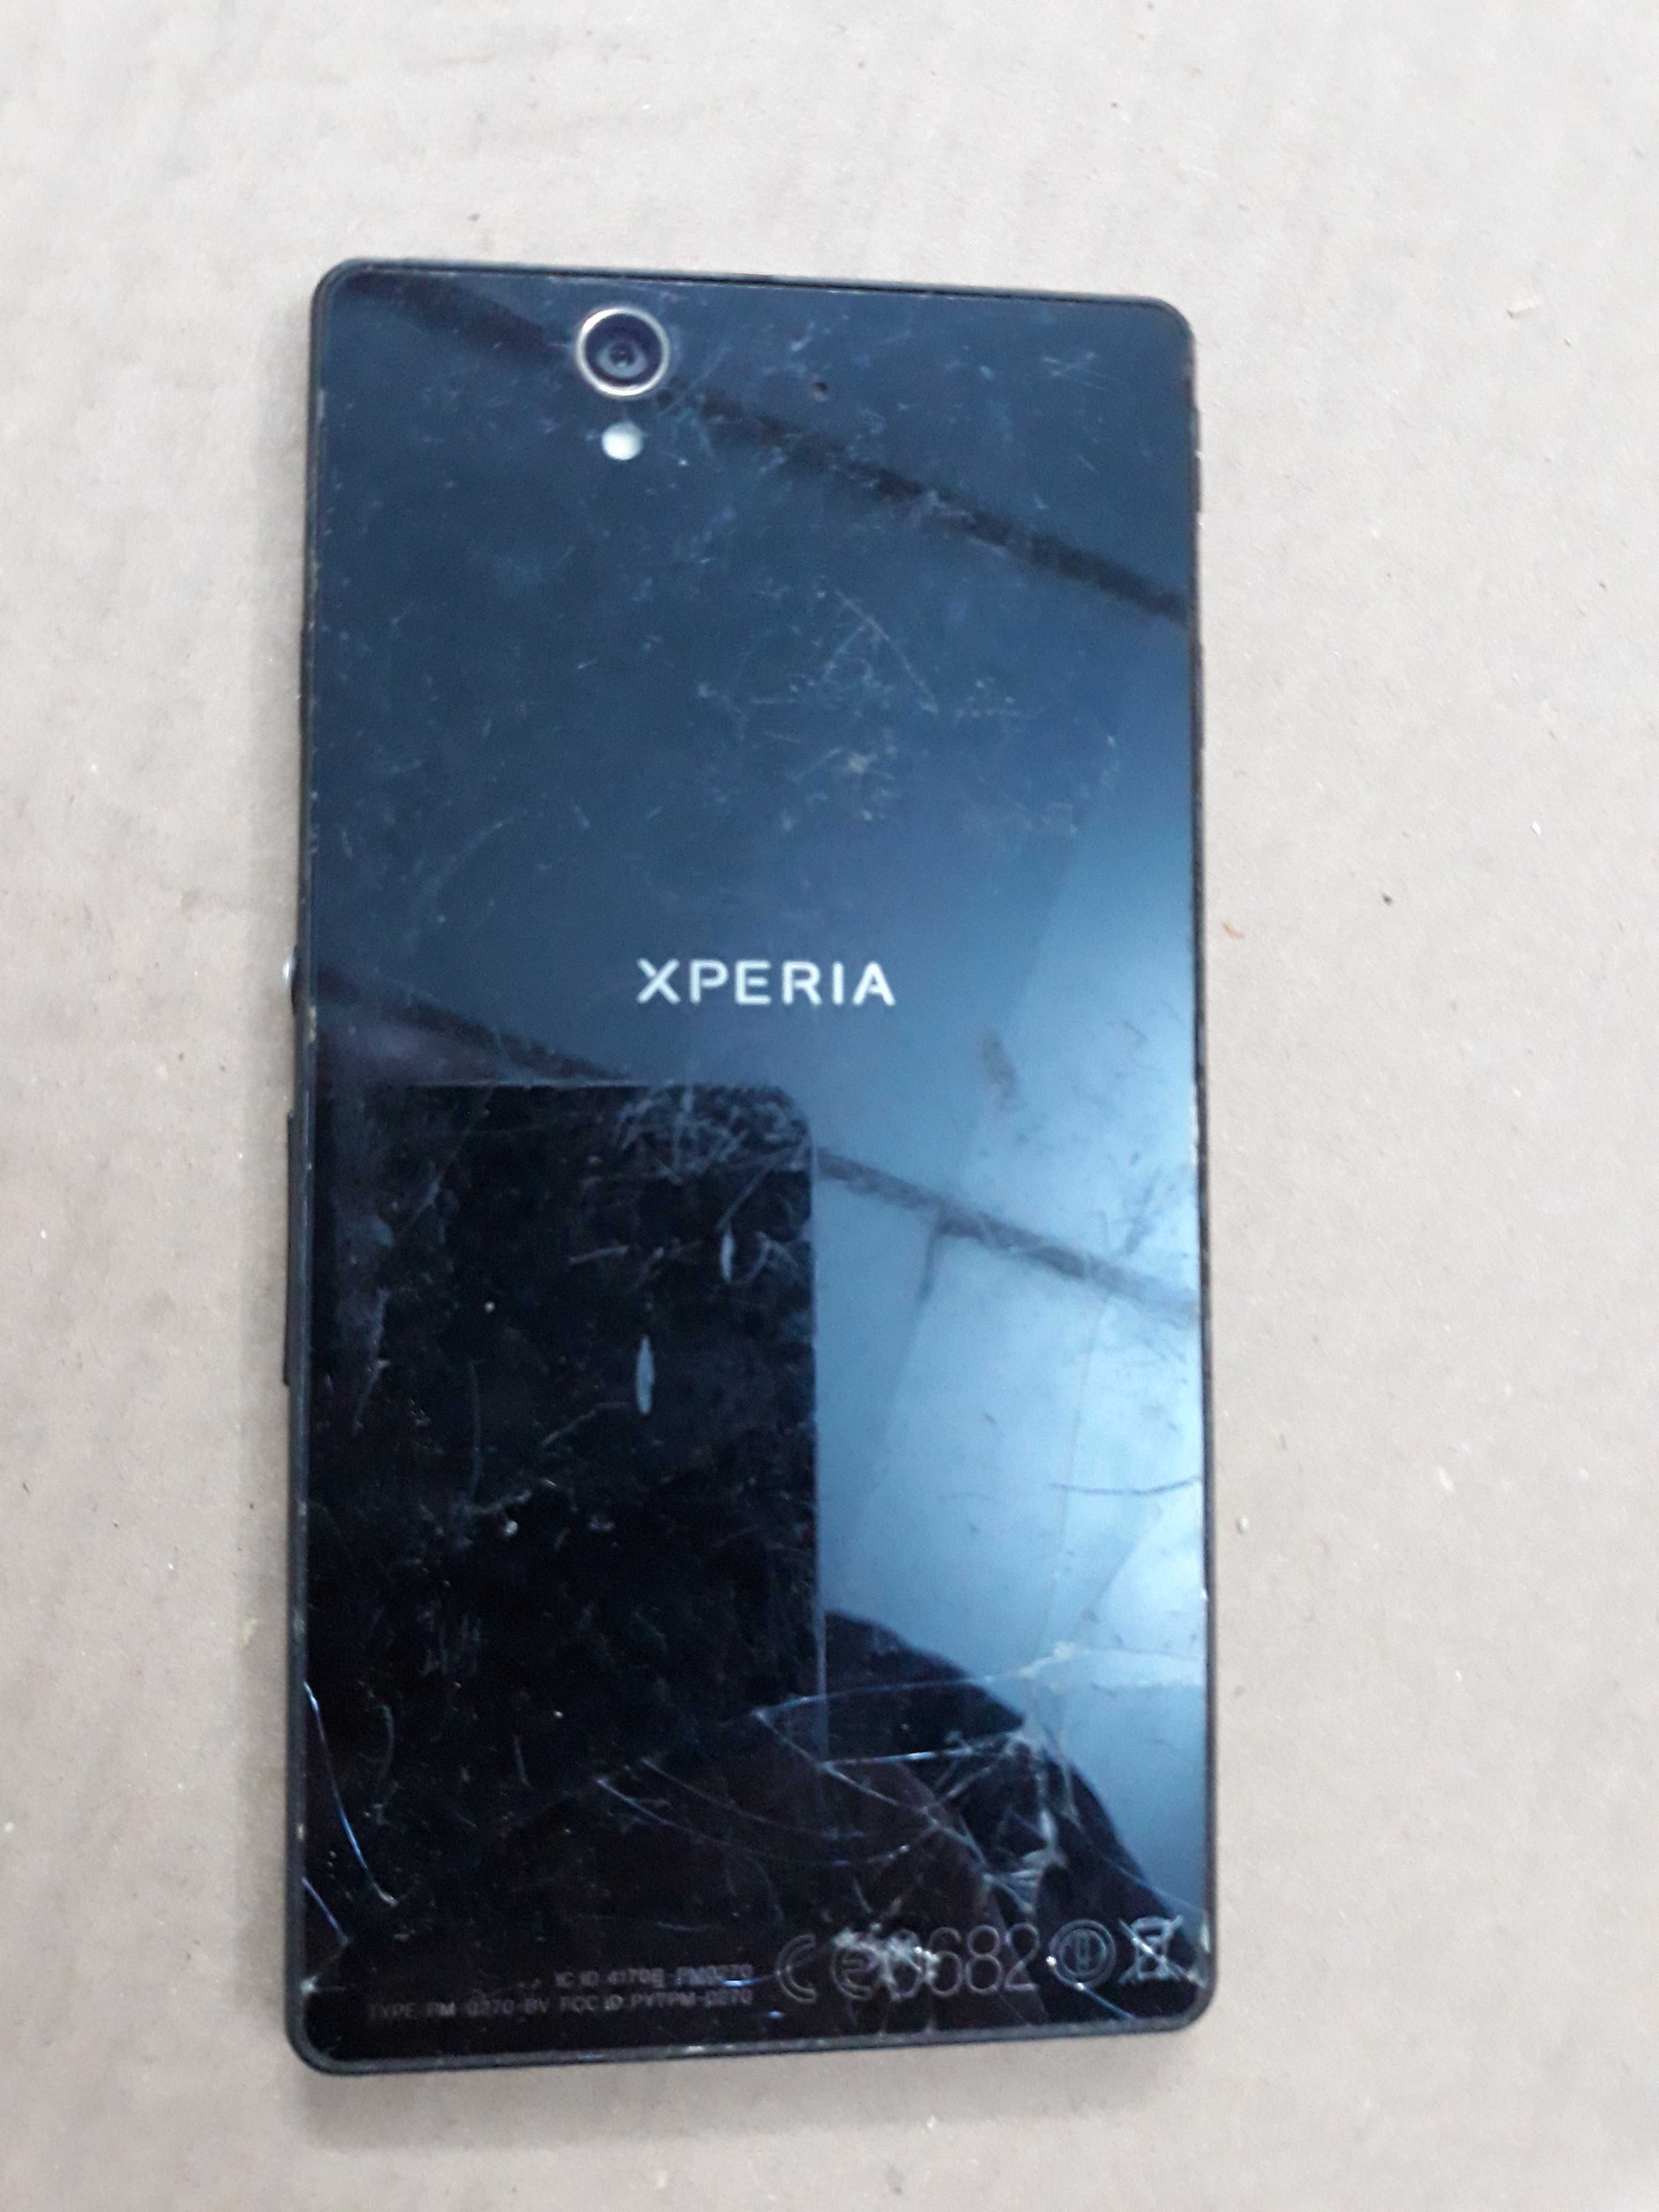 Smartphone Sony XPeria Z, danificado mas a funcionar, e sem carregador